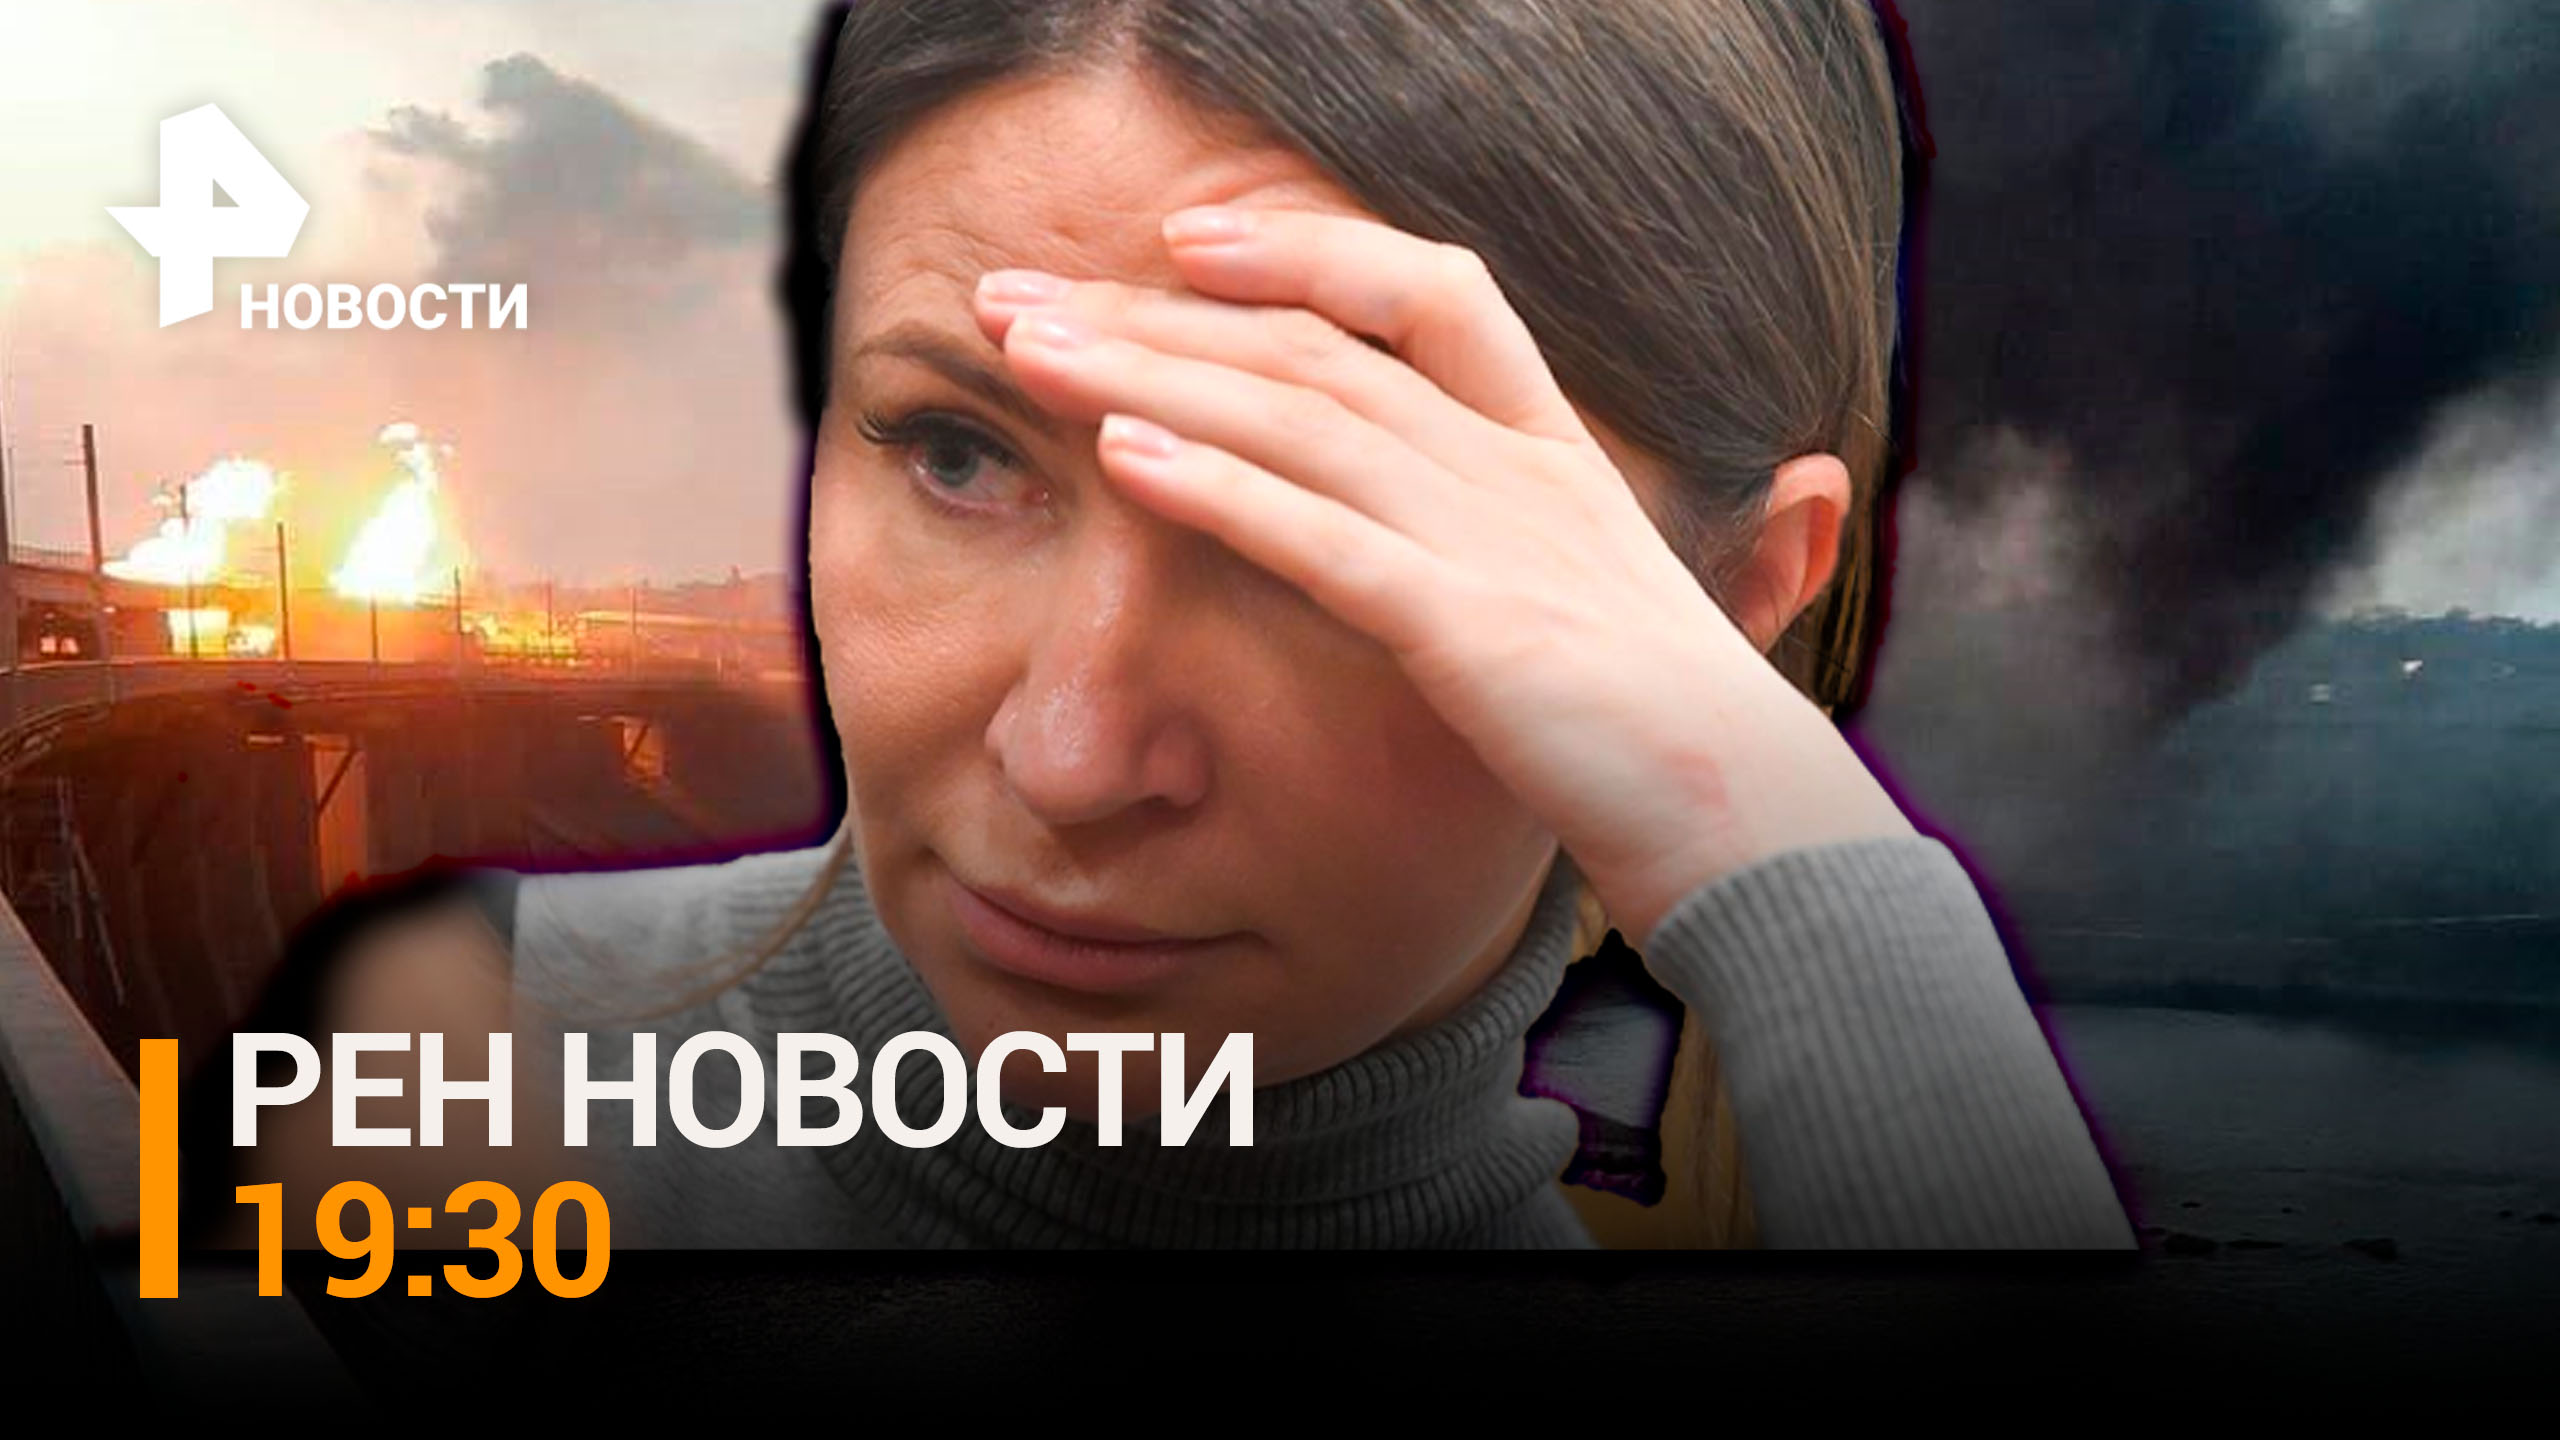 «Блэкаут» Украины. Борьба с неонацизмом. Темная сторона шоколада / РЕН НОВОСТИ 19:30